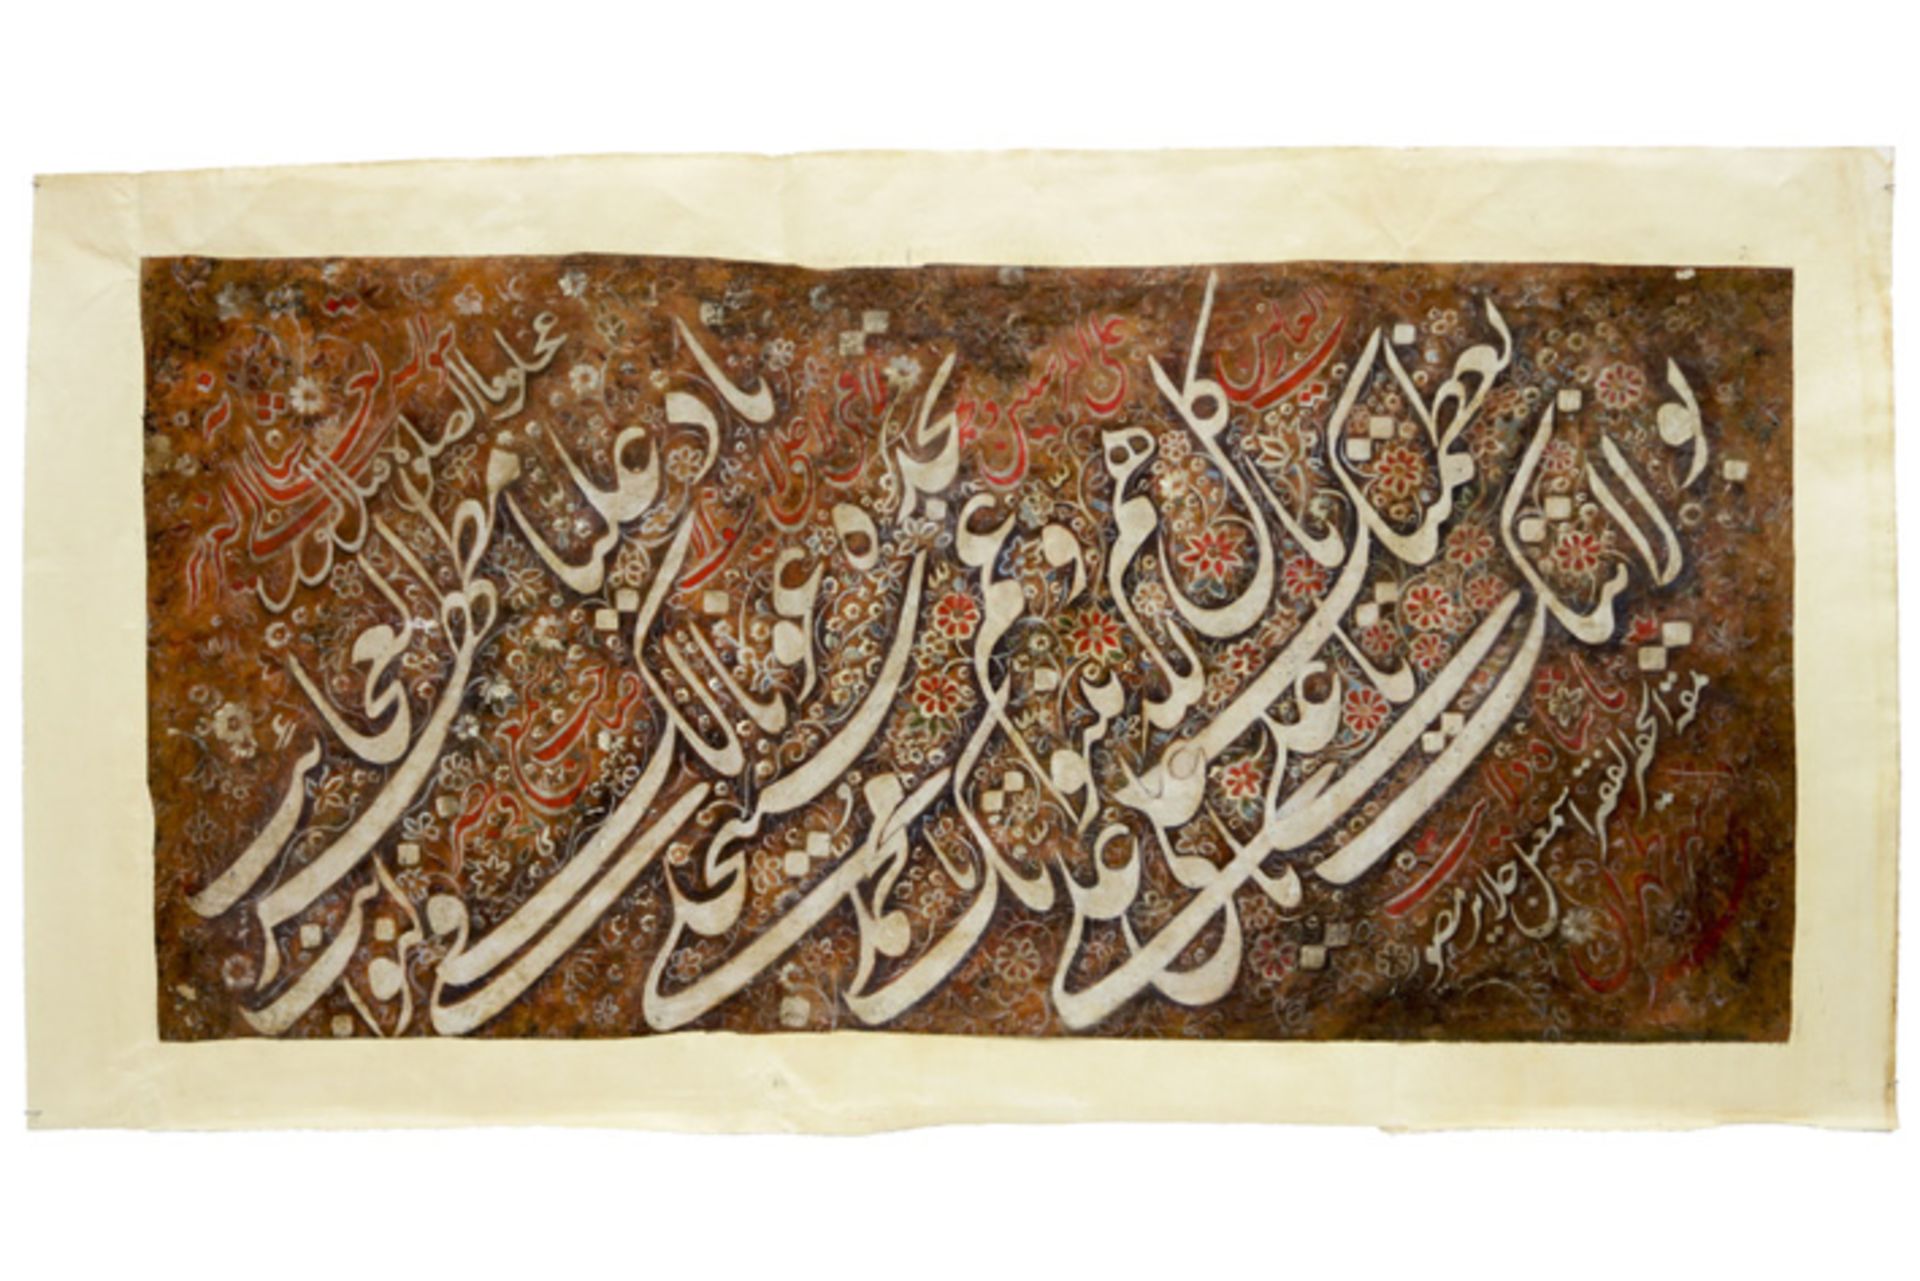 ISMA'IL JALAYIR (actief tussen 1840 en 1860) - QAJAR IRAN antiek Perzisch manuscript - een gouache